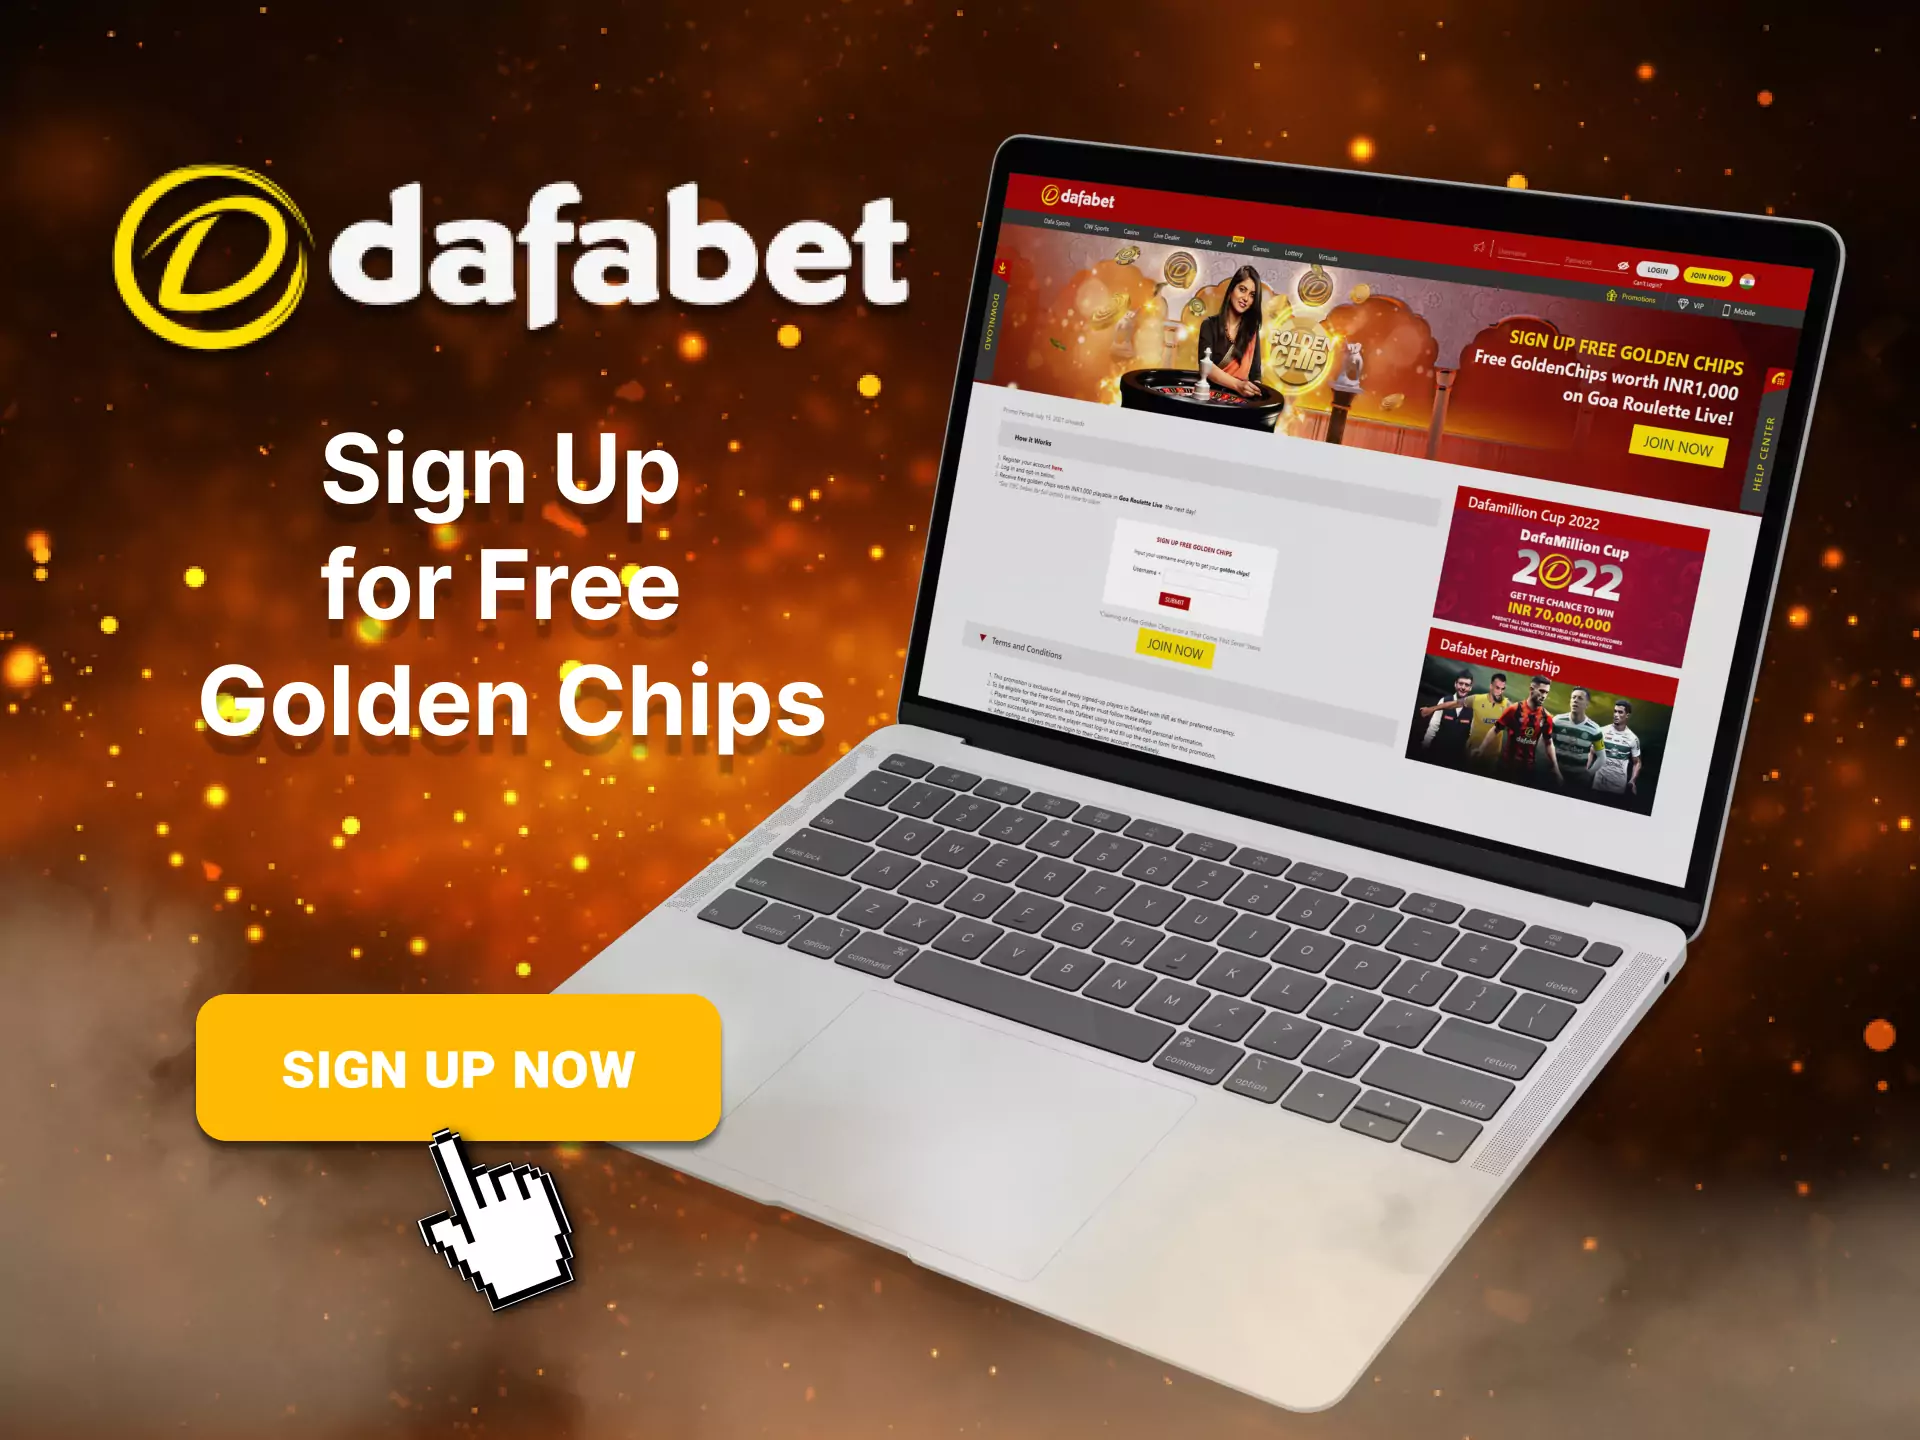 Sign up and get a Golden Chips bonus at Dafabet.